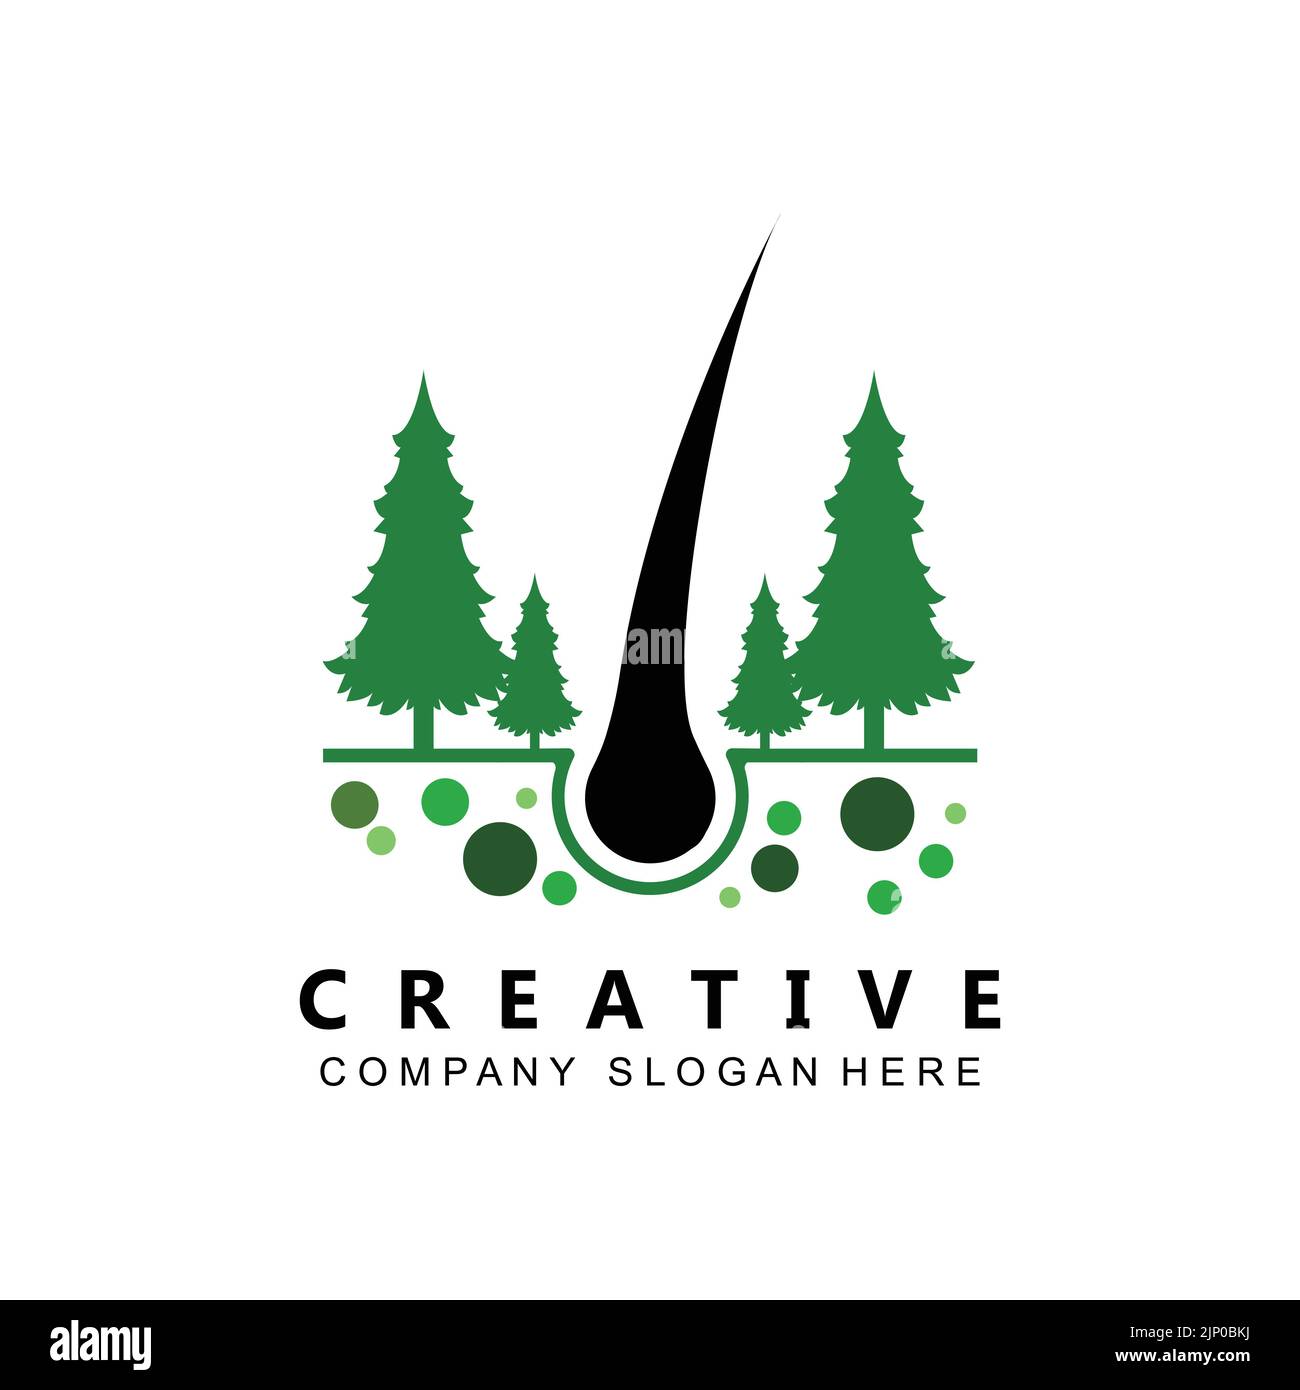 hair care logo vector icon skin health illustration design concept Stock Vector